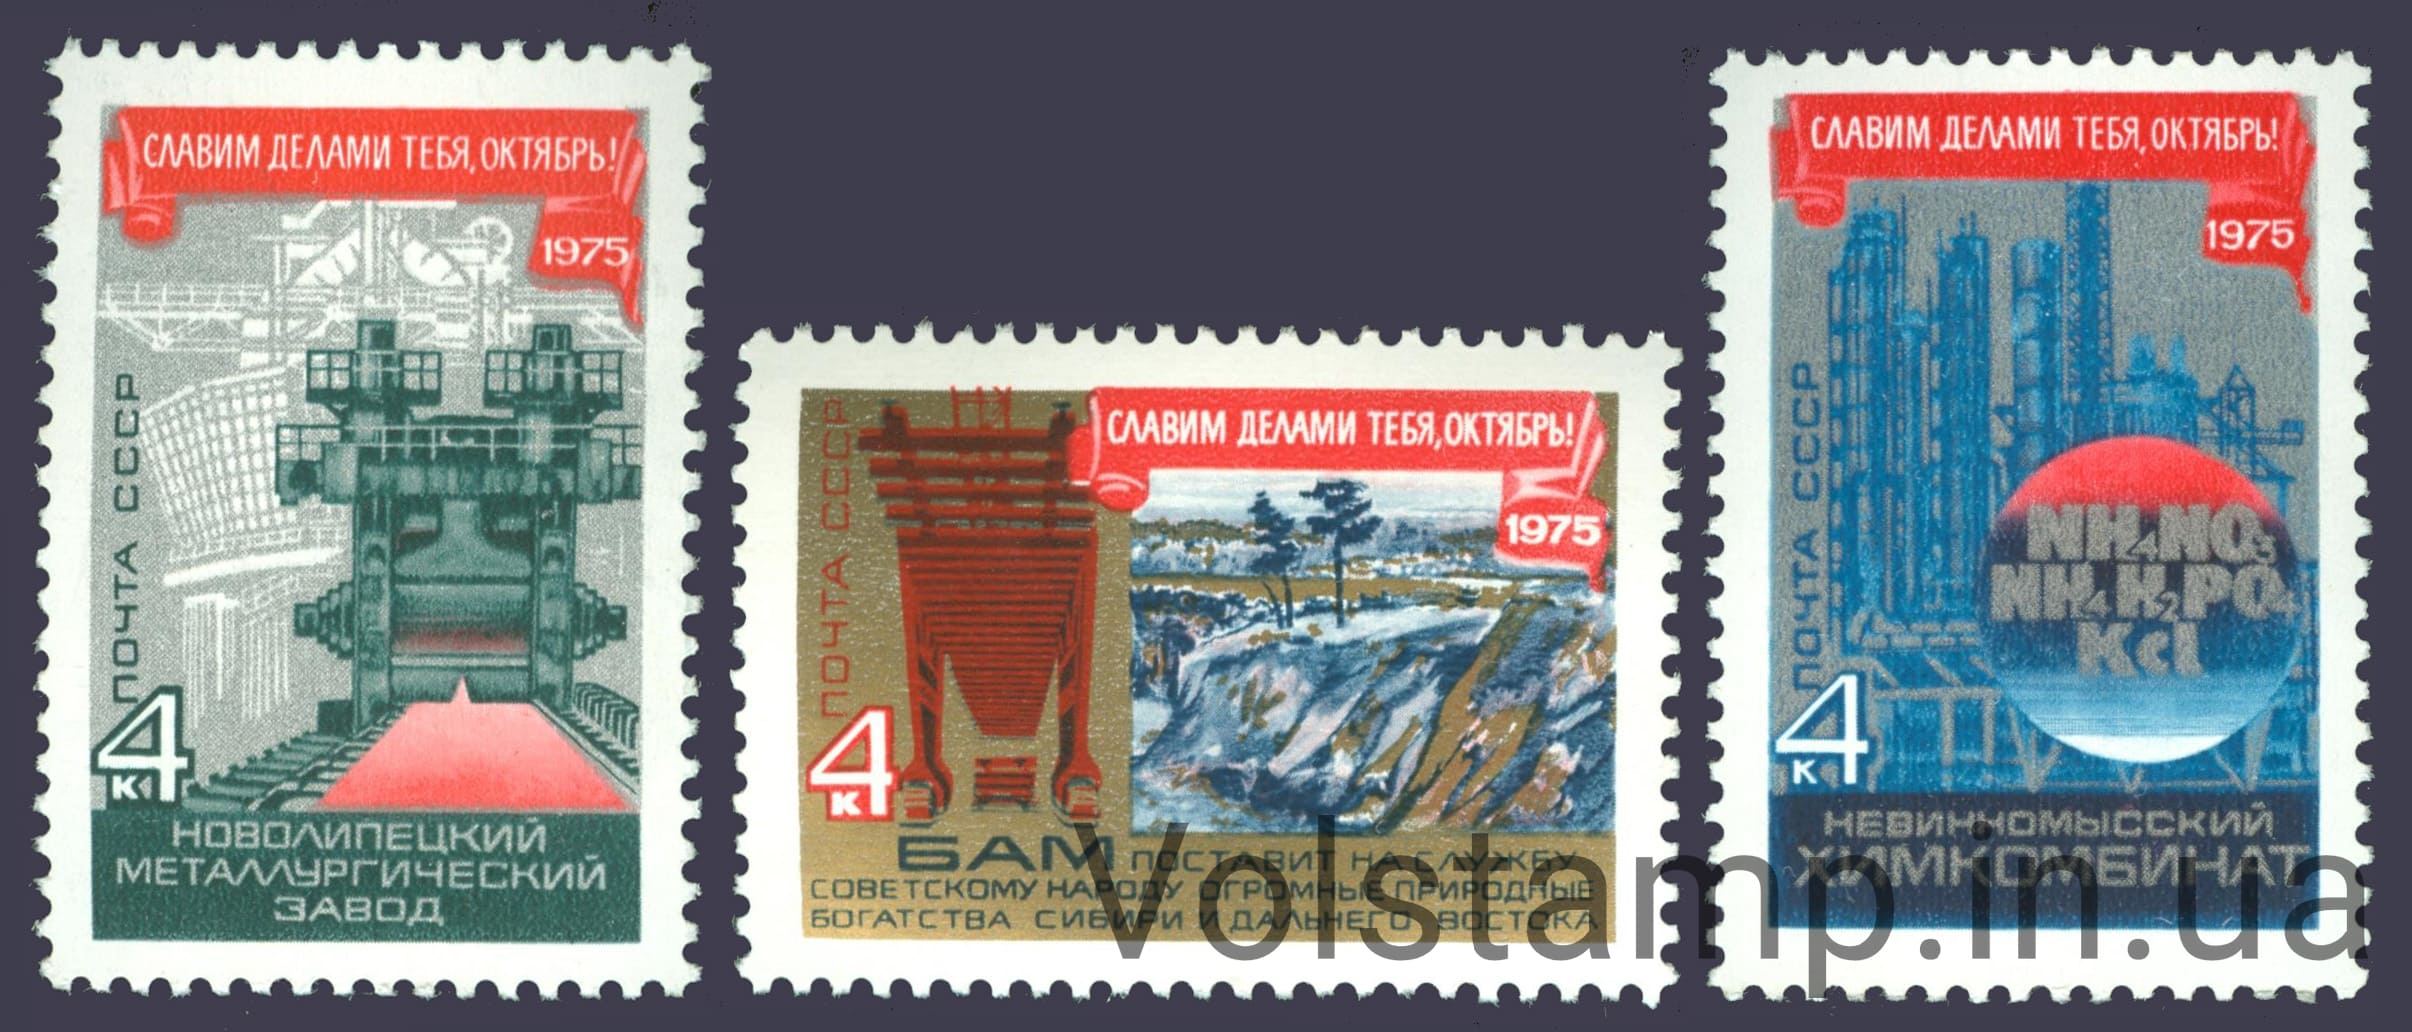 1975 серия марок 58 лет Октябрьской социалистической революции №4464-4466